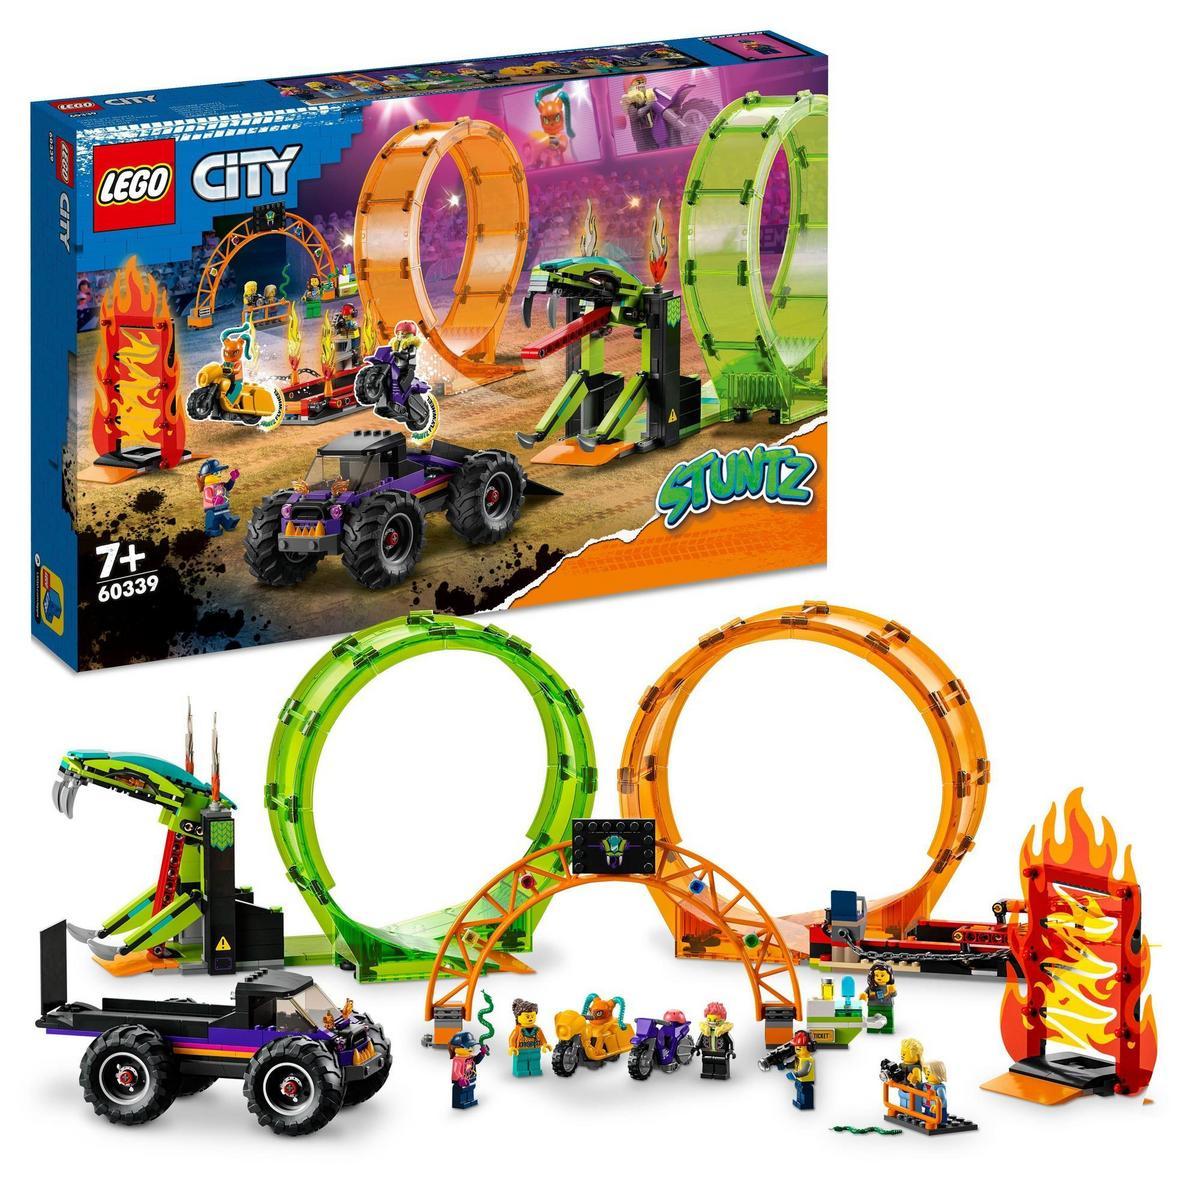 LEGO - Kit de construcción de juguetes para niños a partir de 7 años LEGO® City 60339 Pista Acrobática con Doble Rizo; incluye 2 motos acrobáticas con rueda de inercia (598 piezas)